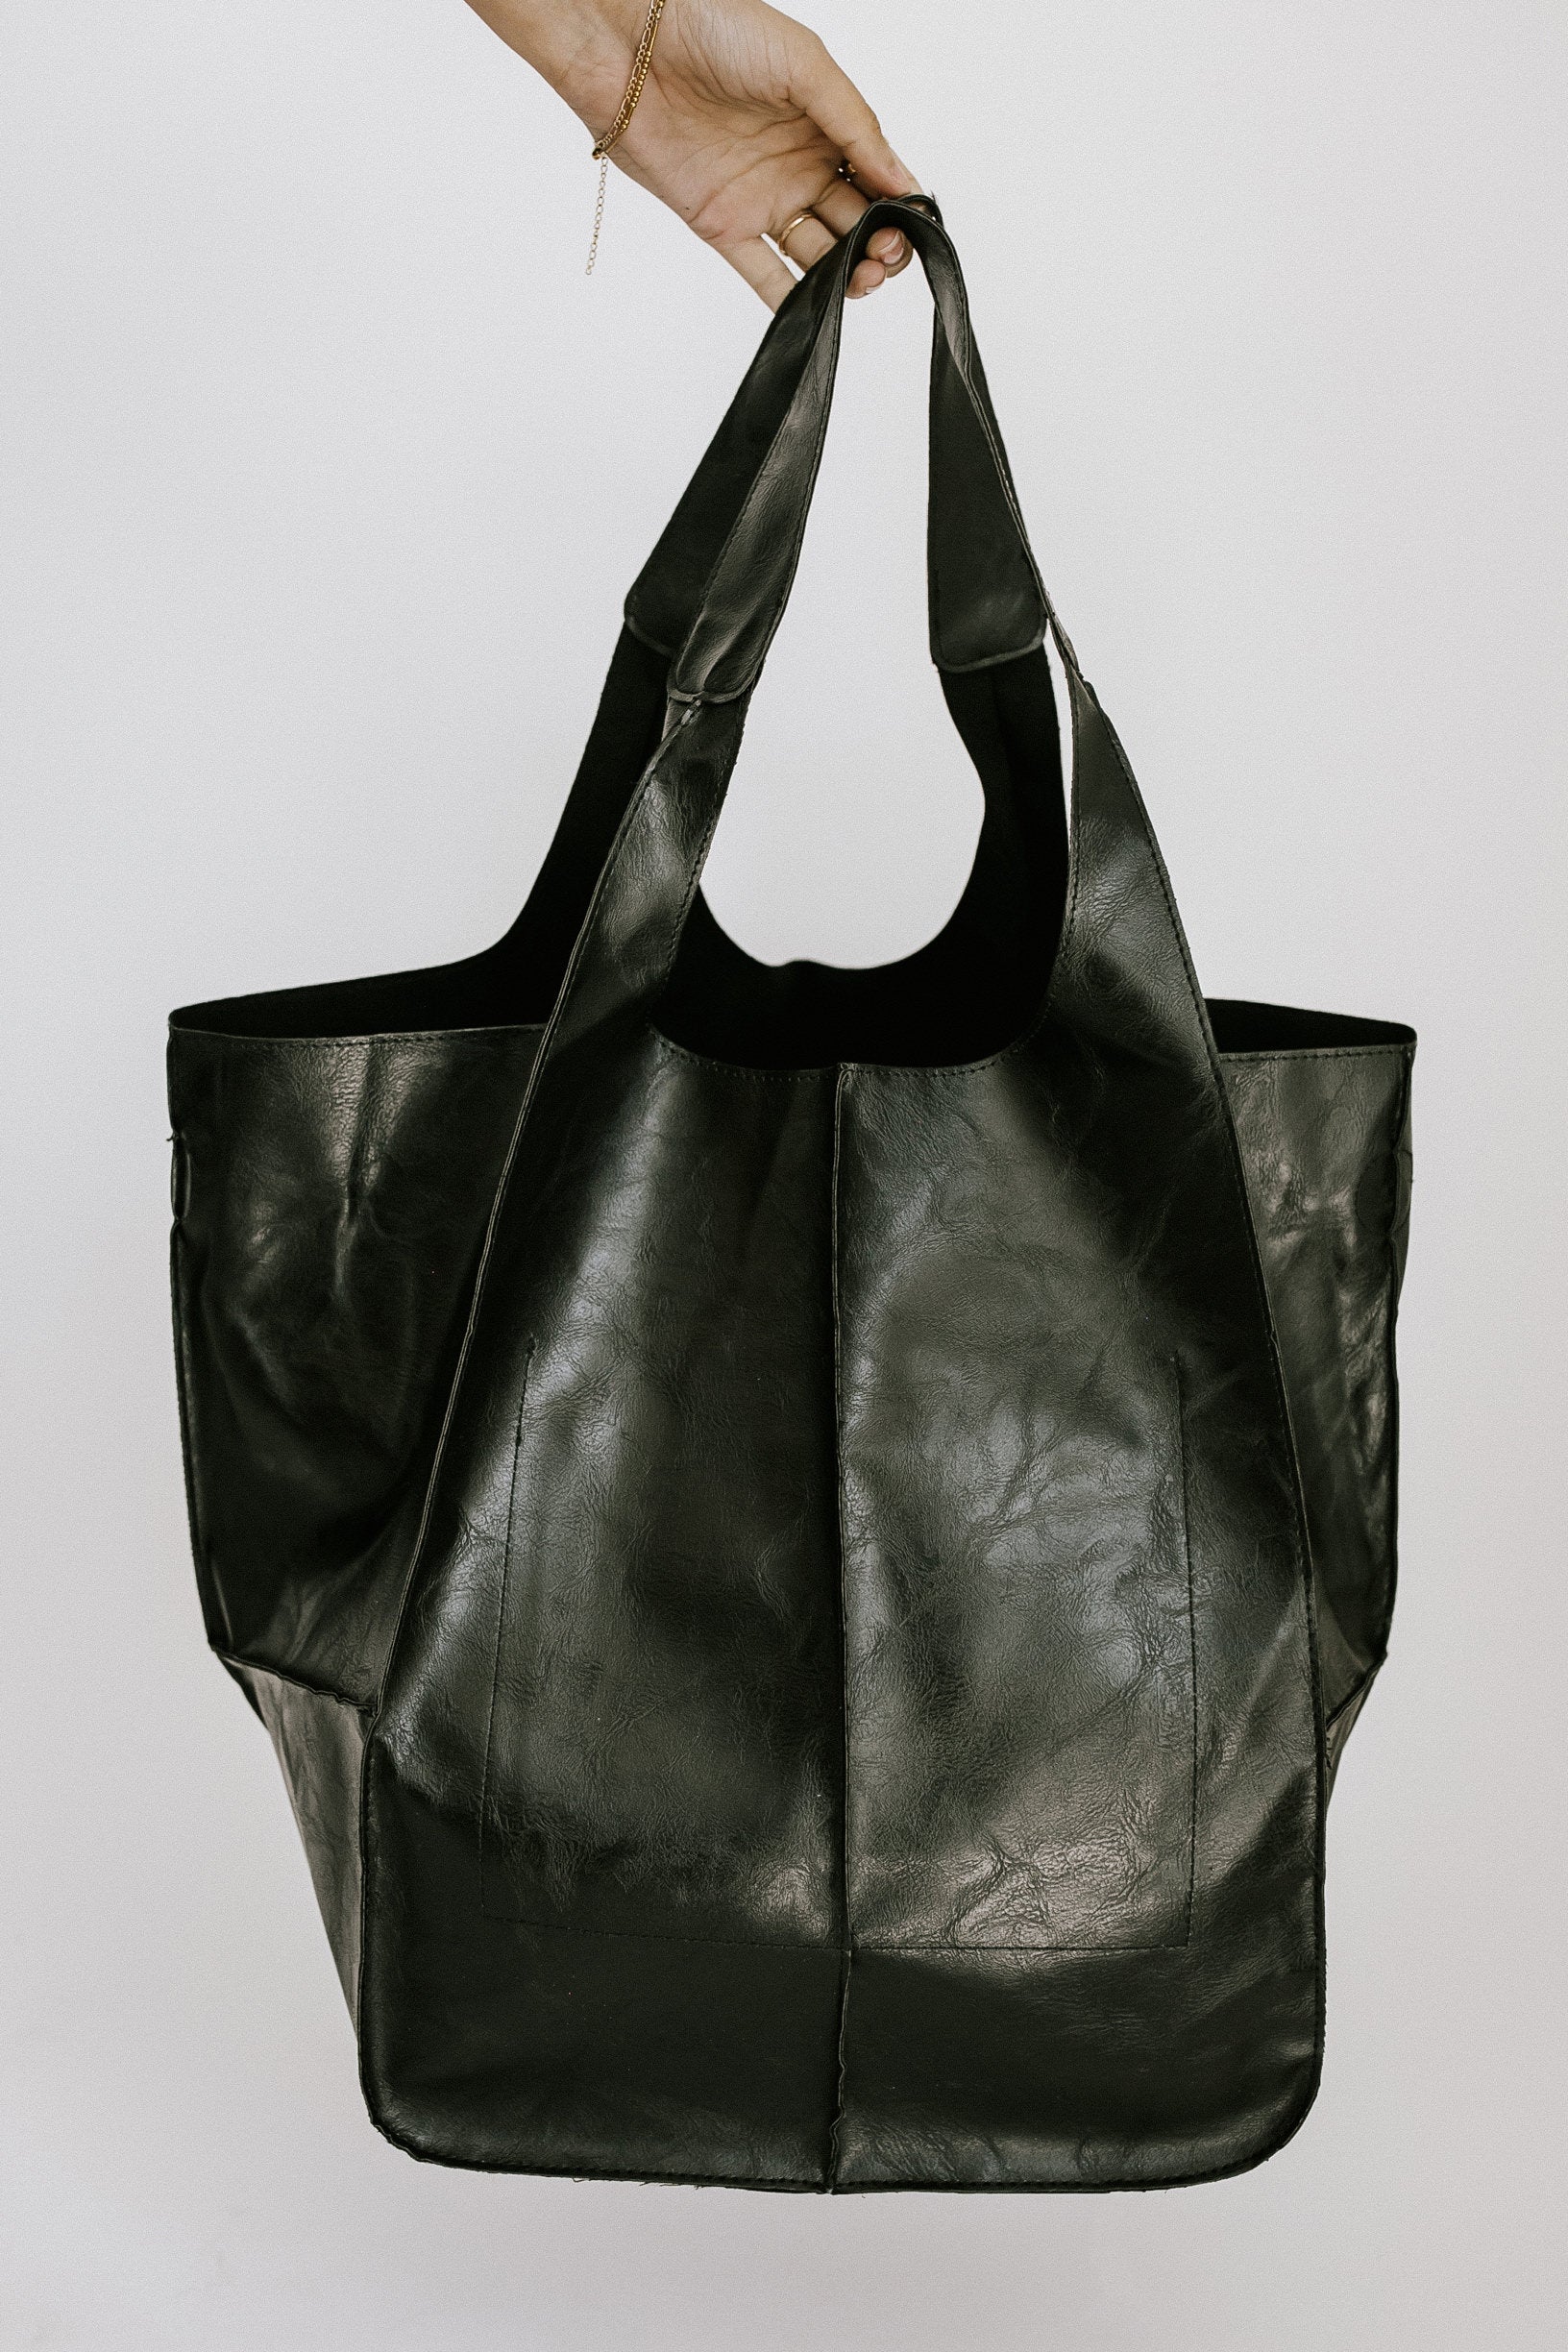 Impromptu Tote Bag - Black